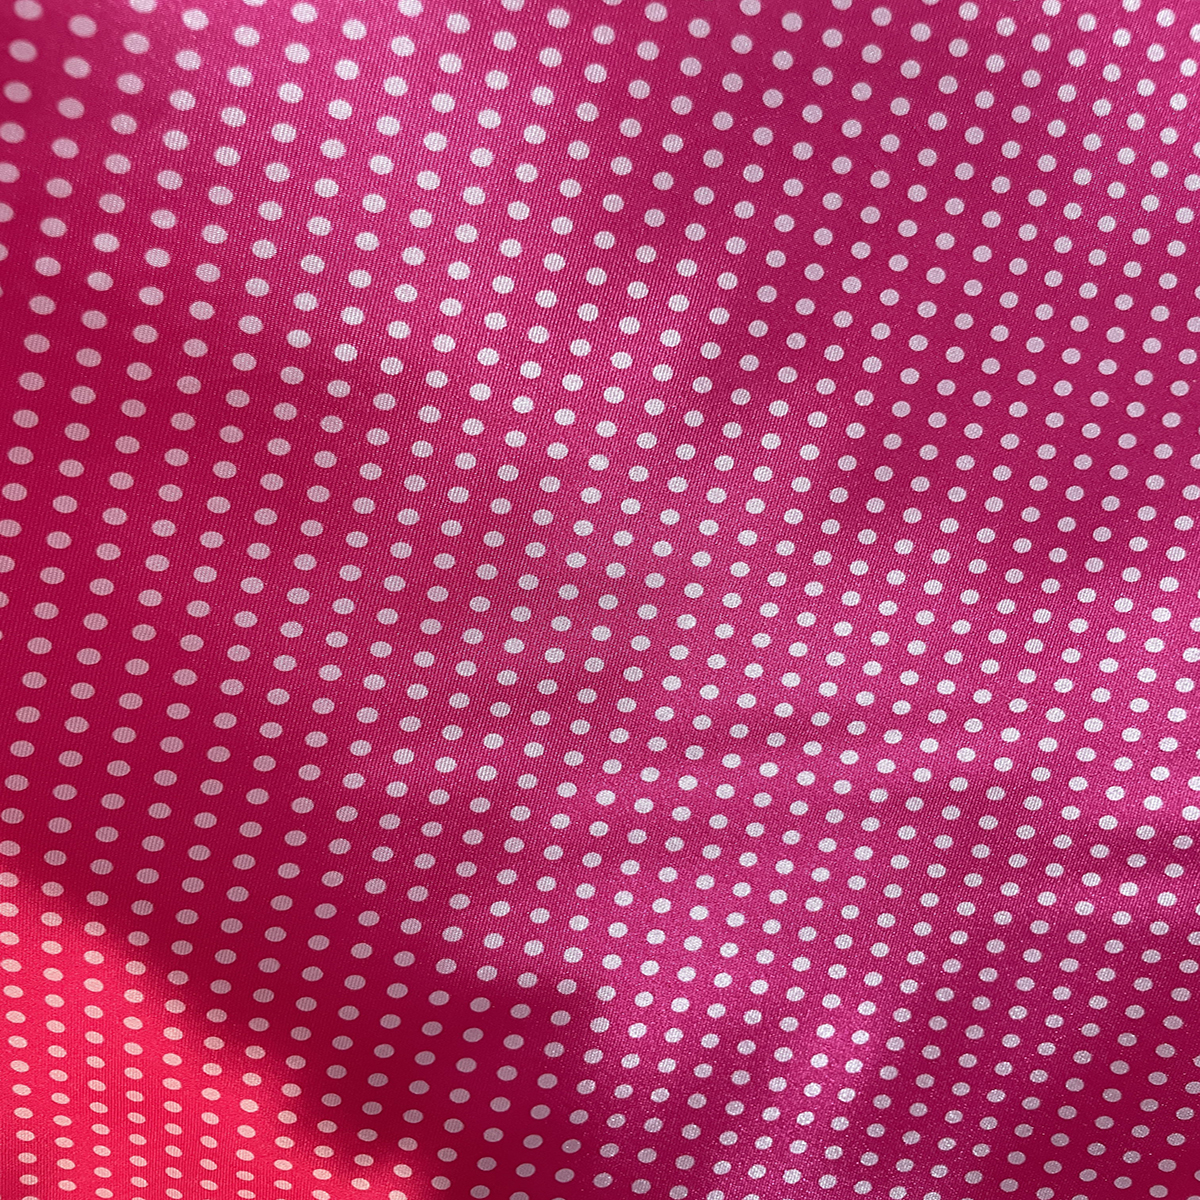 Polka Dots Prints Satin Fabric-Hot Pink